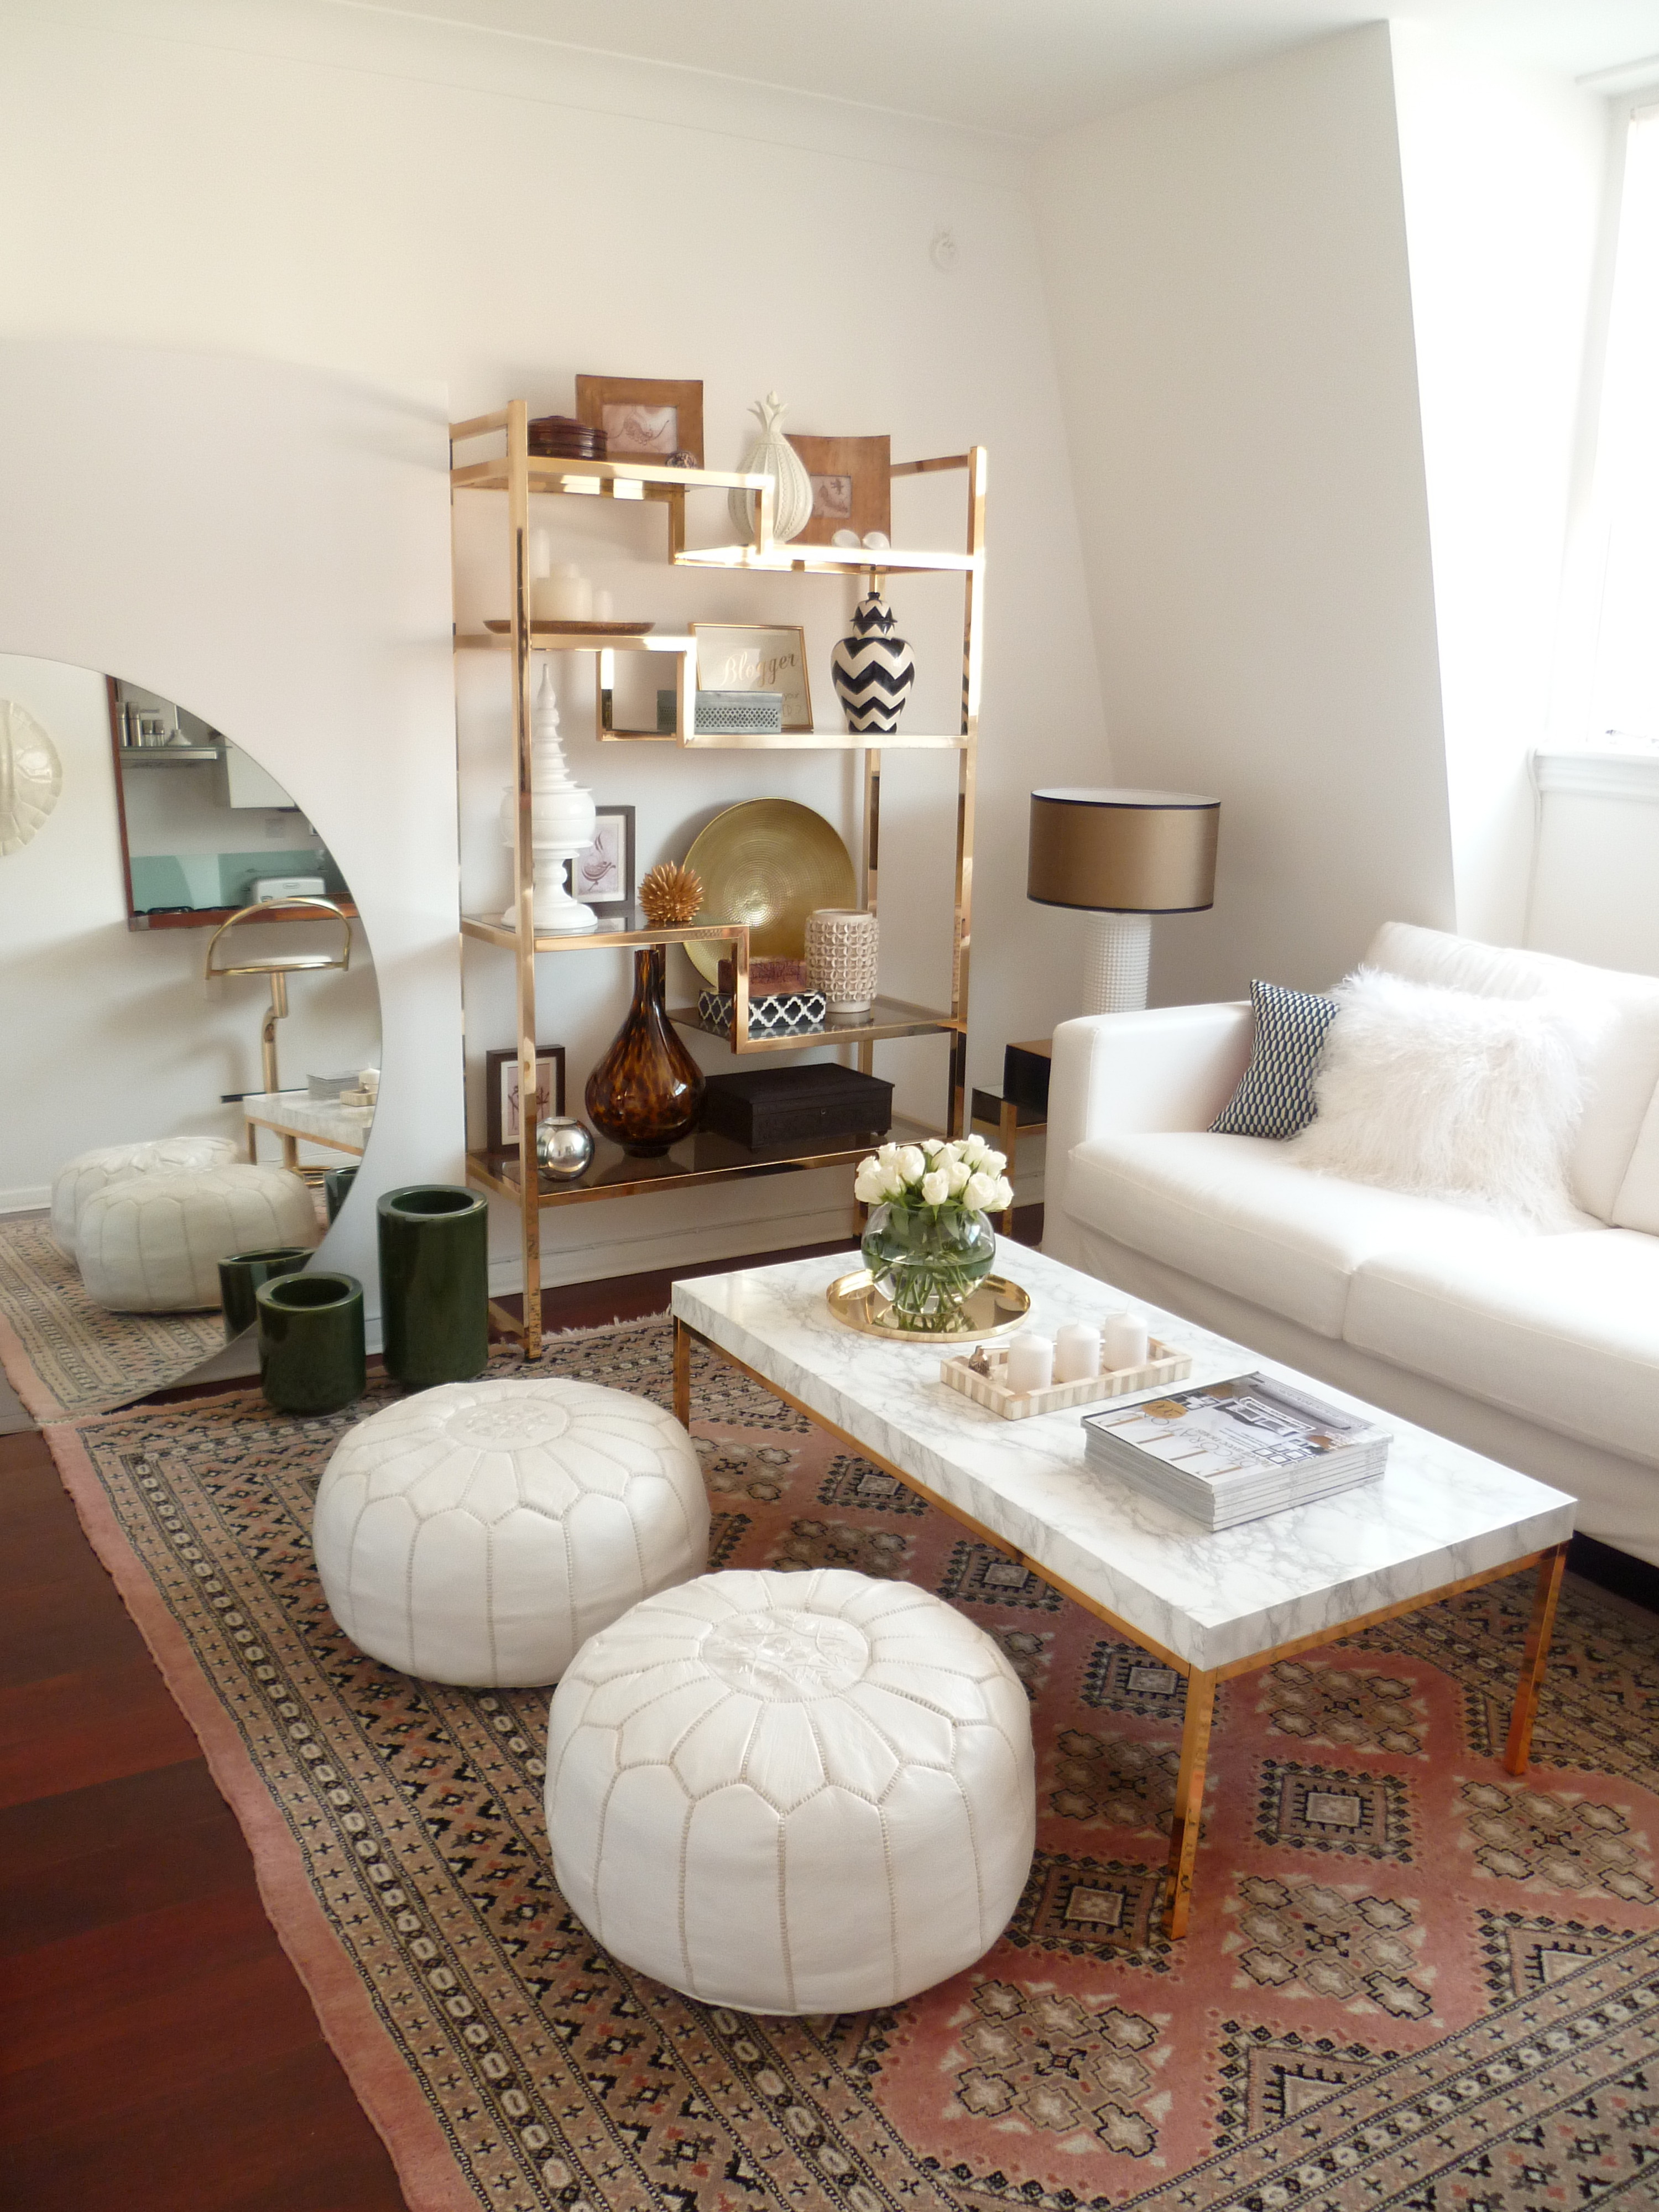 Preciously Me blog : Living room before